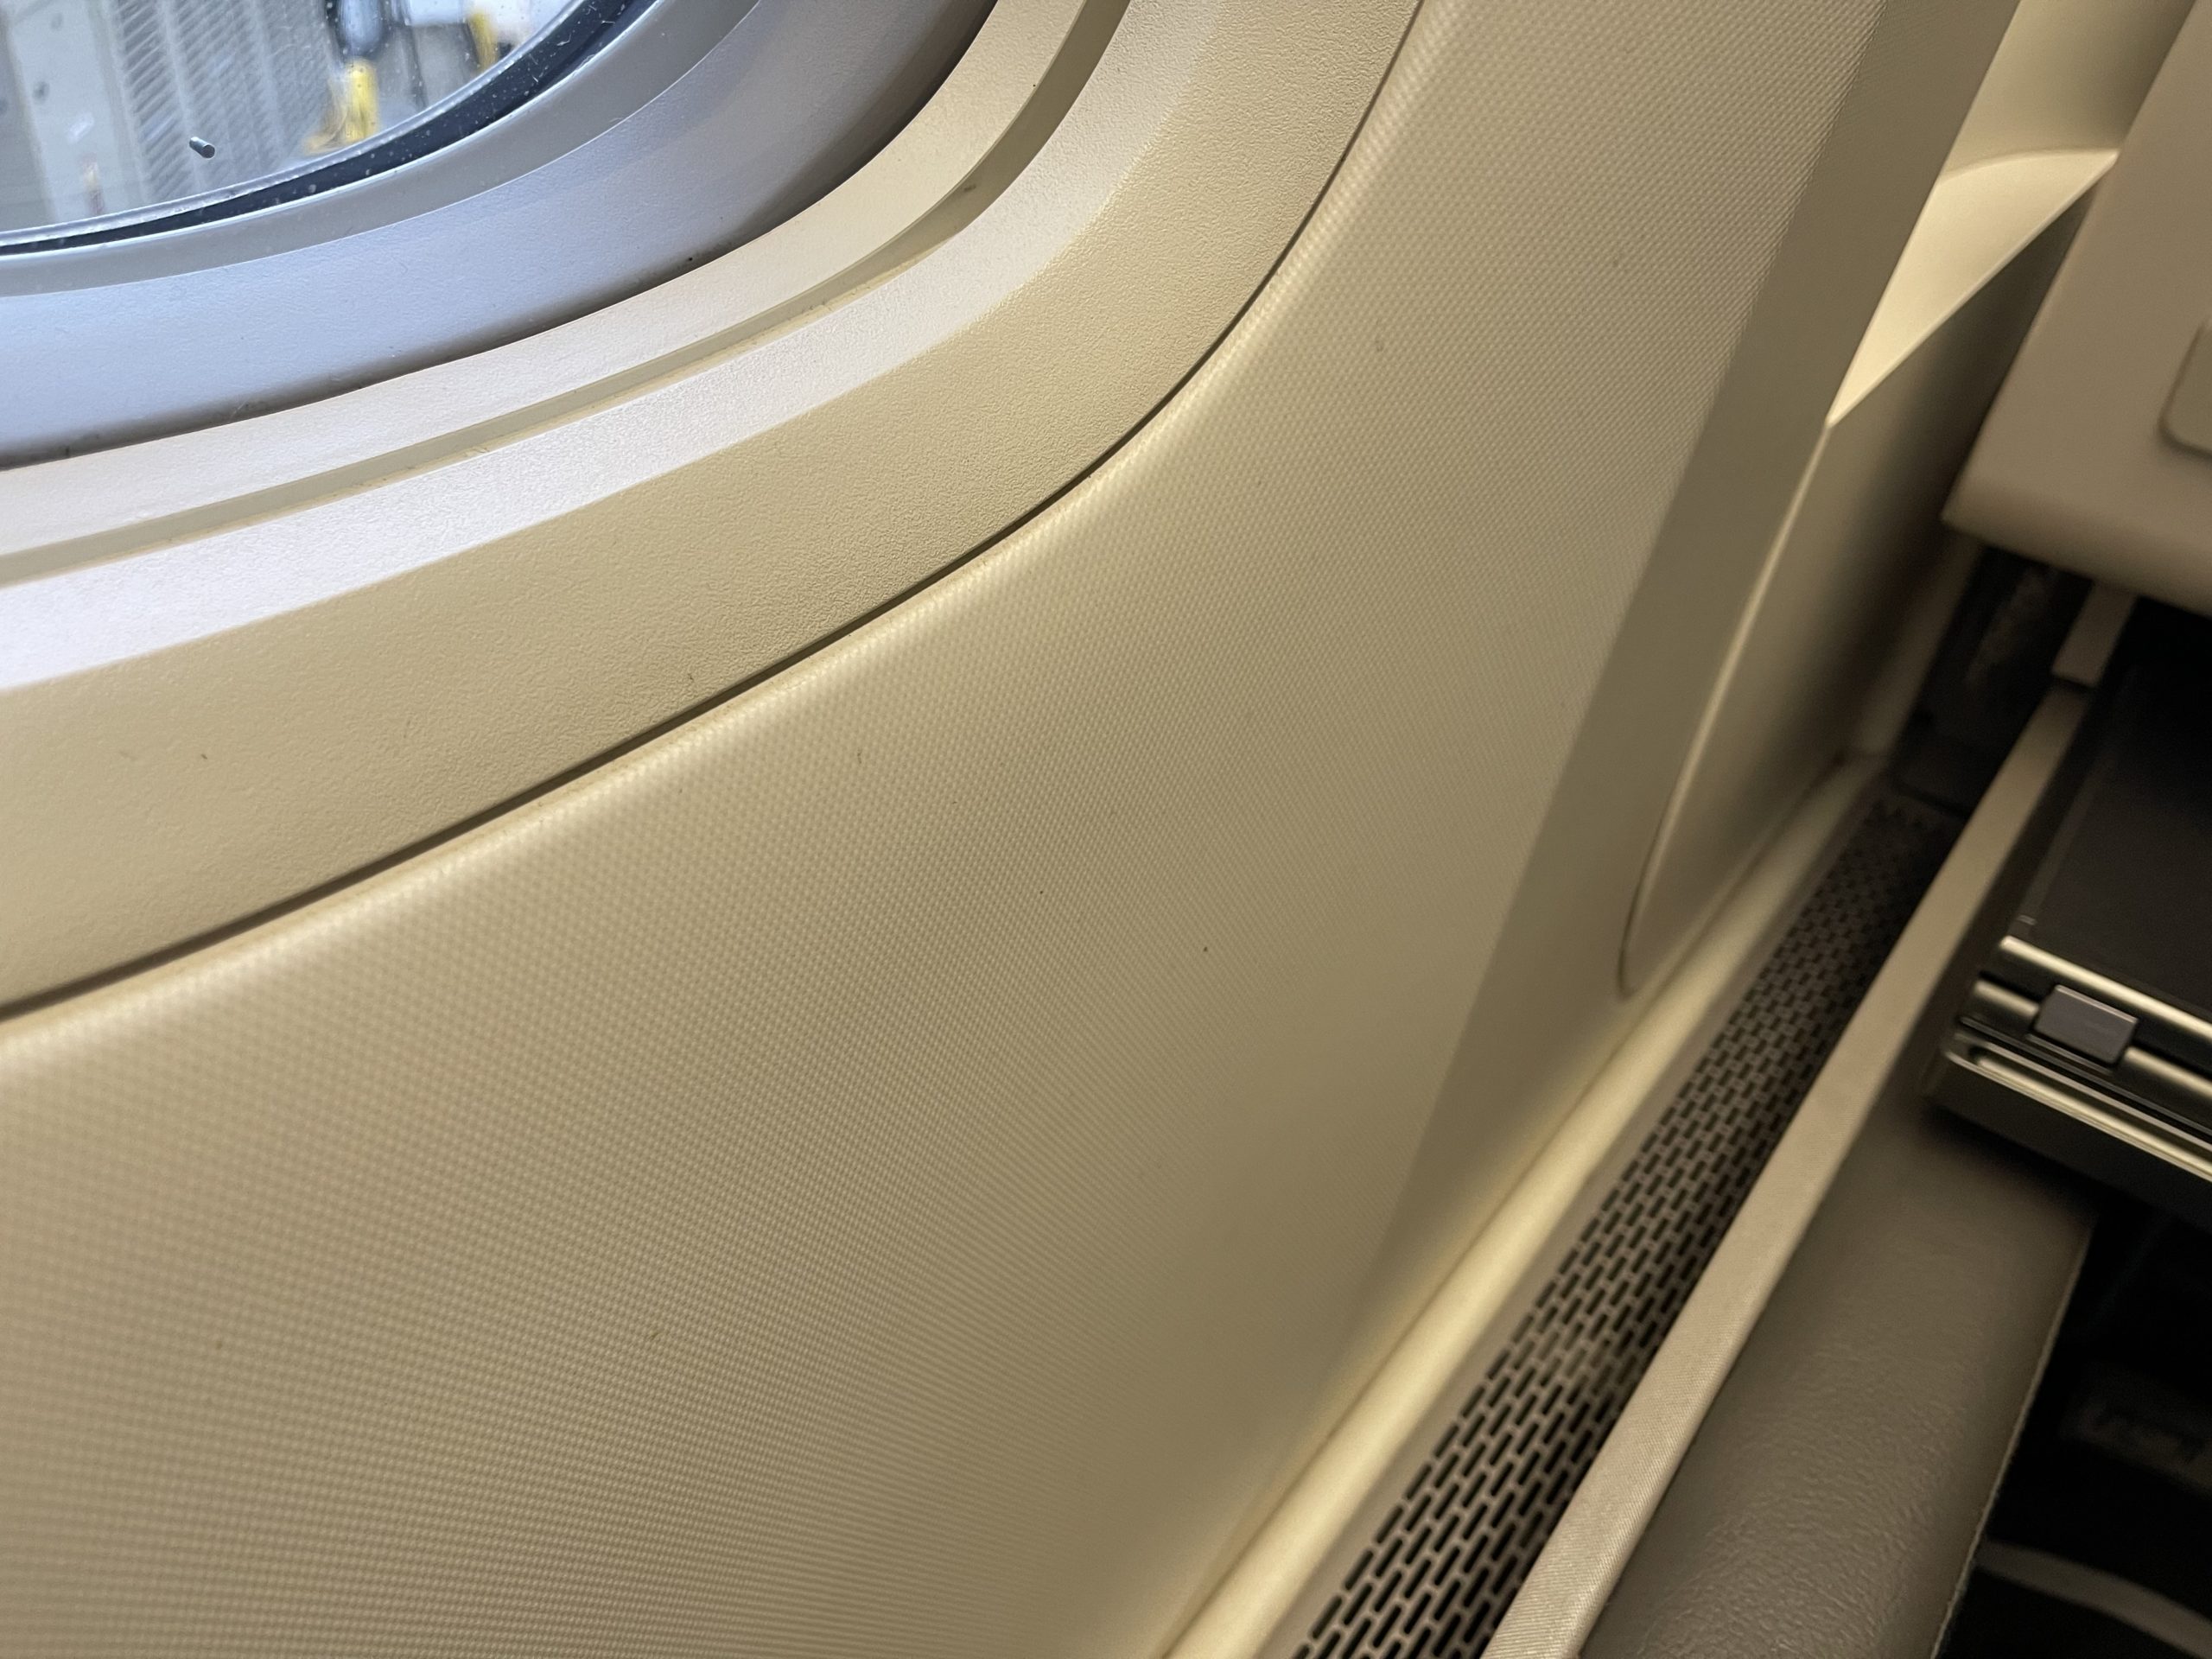 a window in a plane